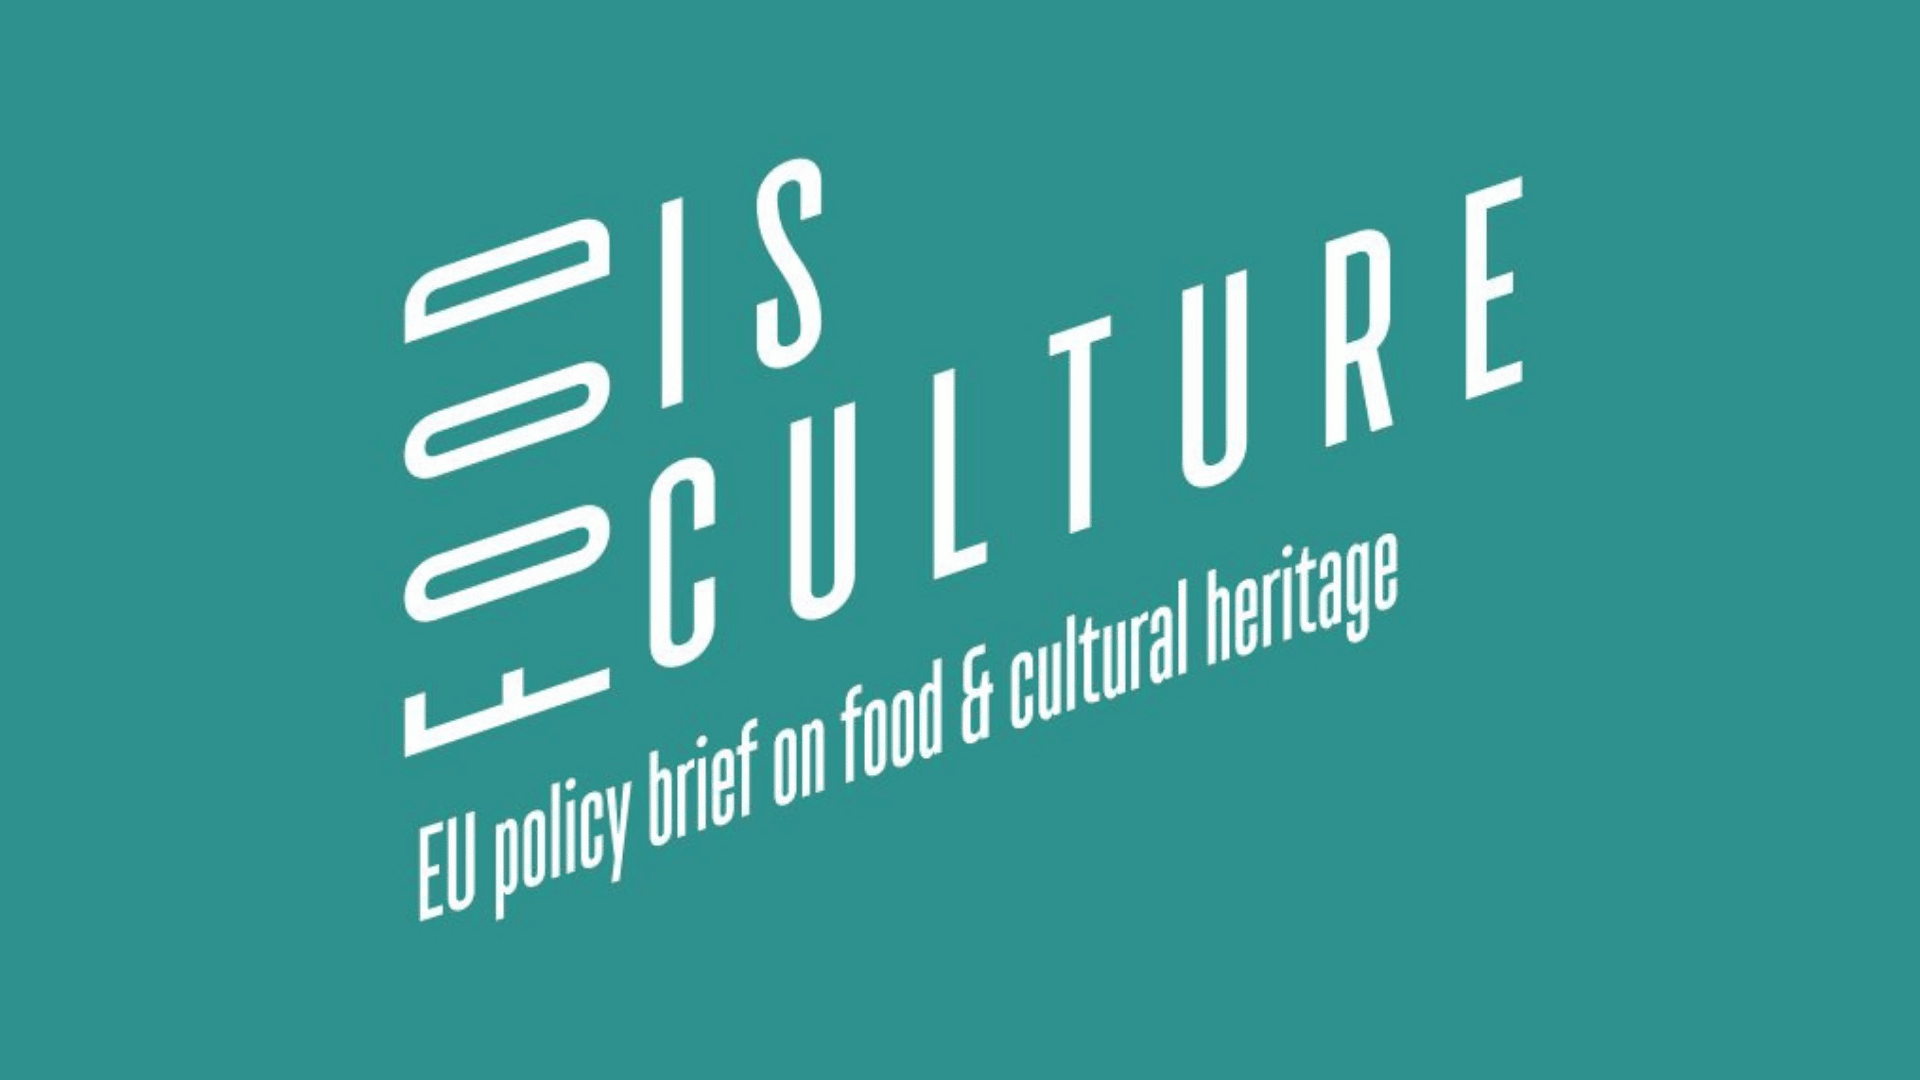 Gezamenlijke beleidsnota over voeding en cultureel erfgoed